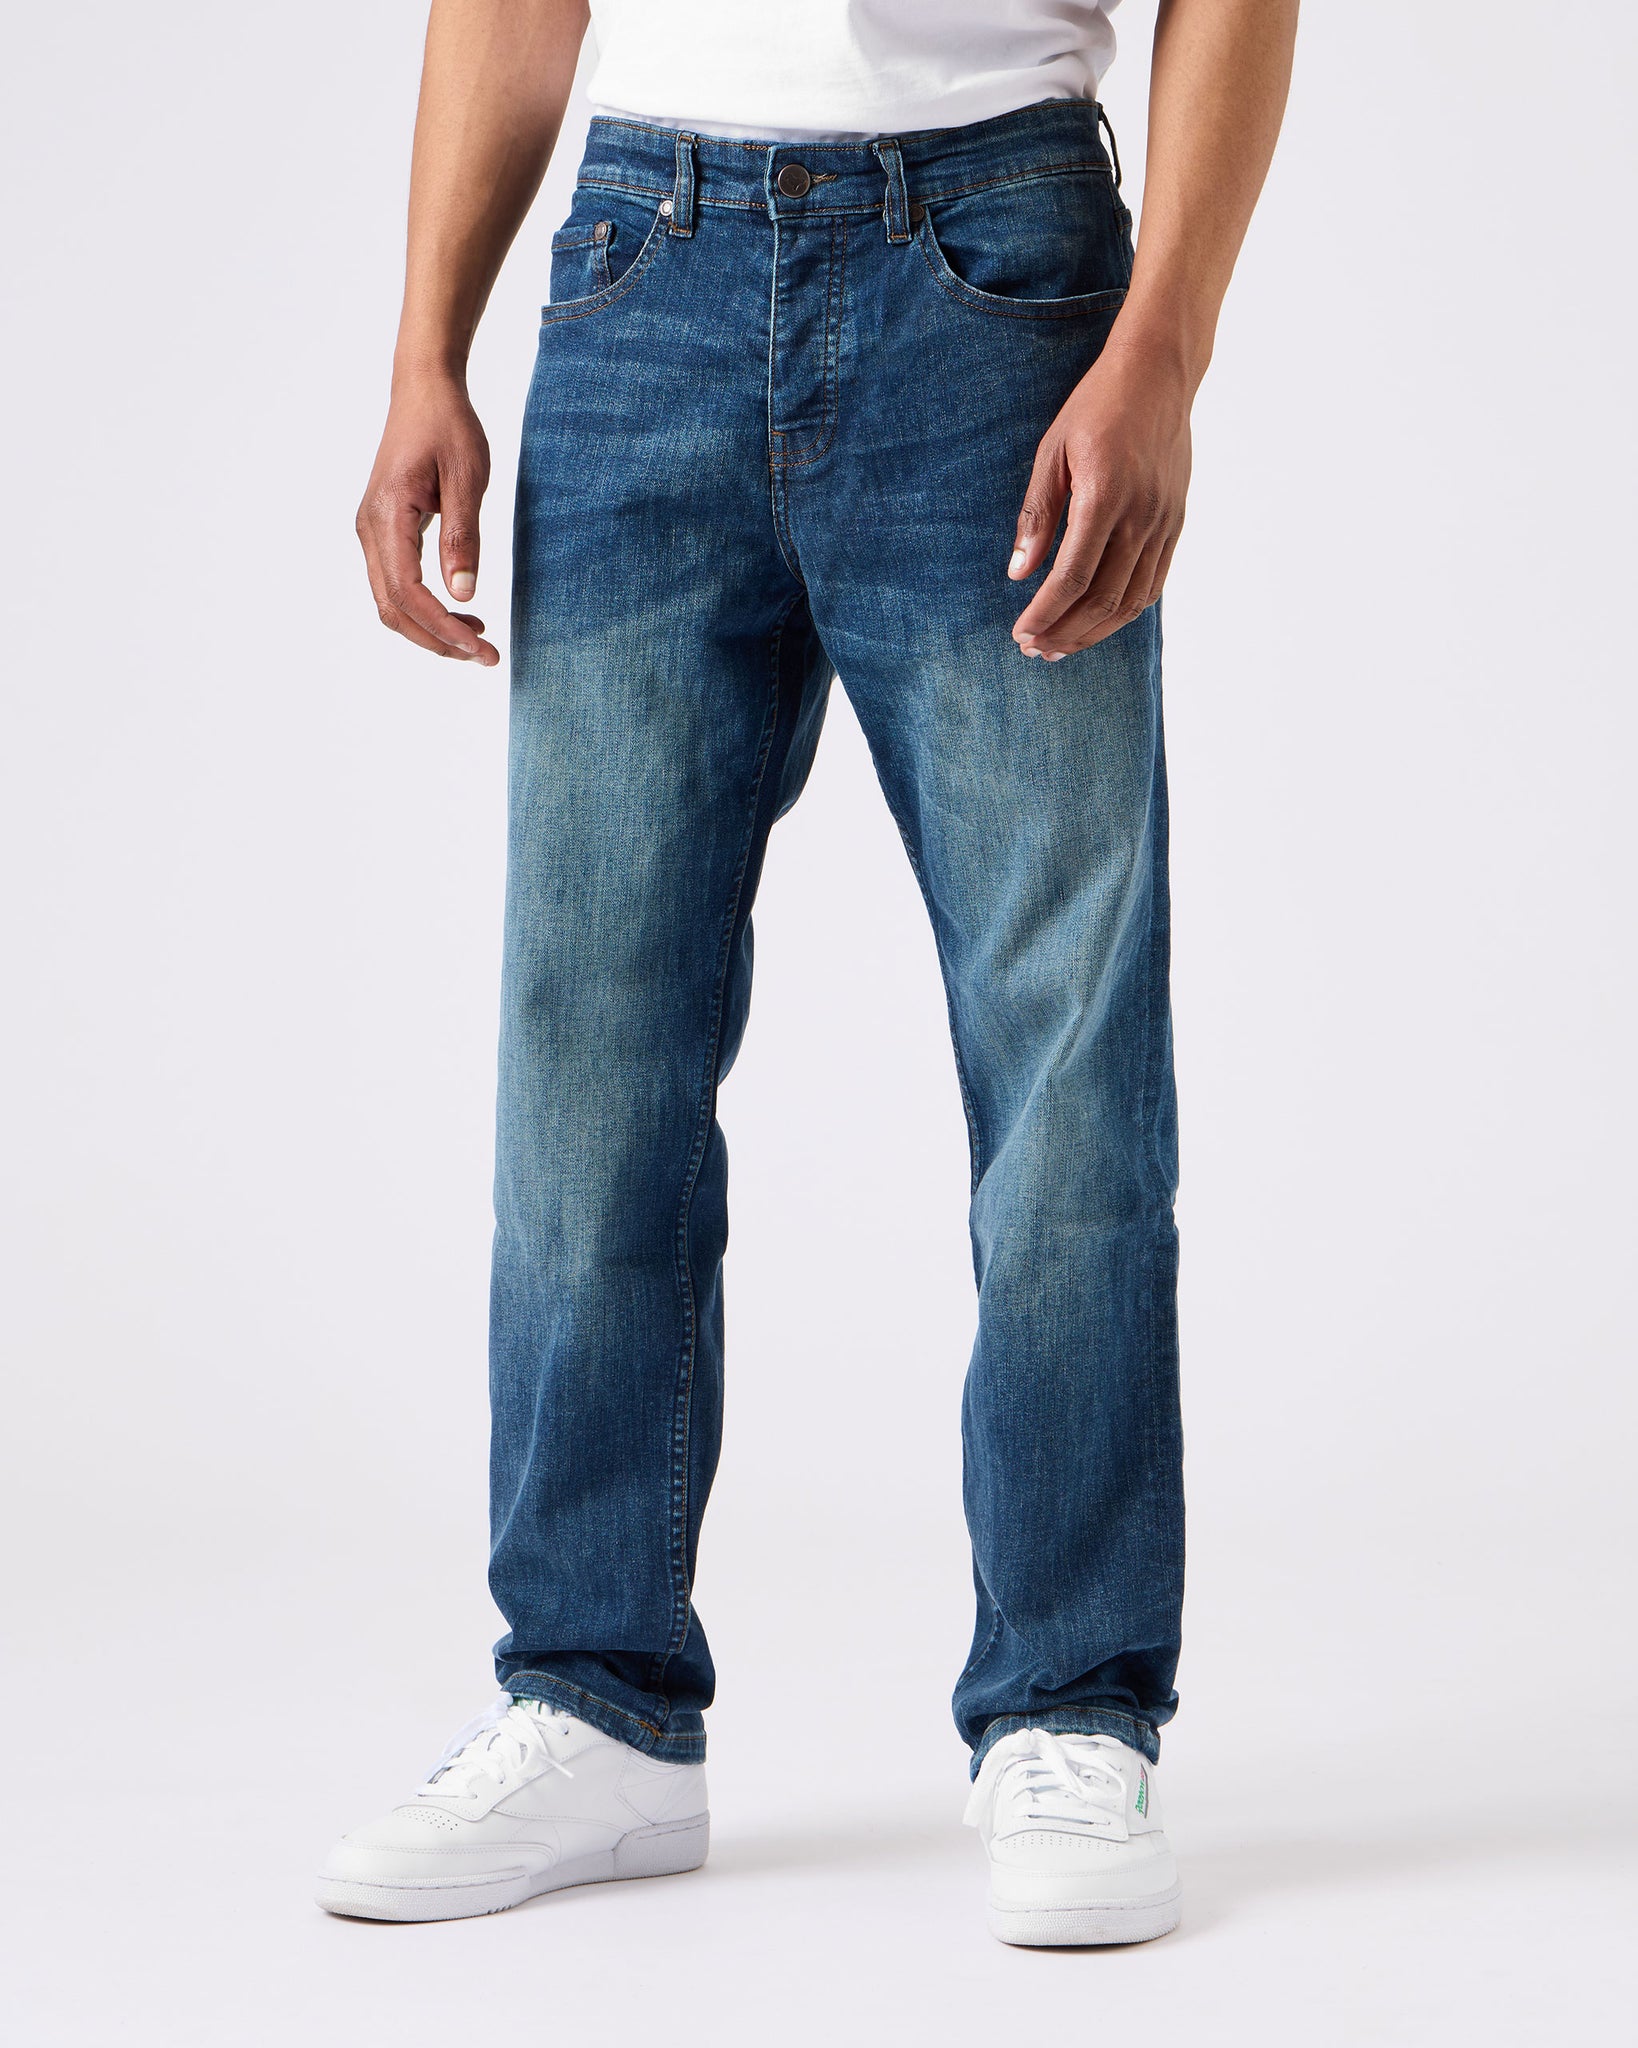 444 Easy Washed Vintage Denim Jeans